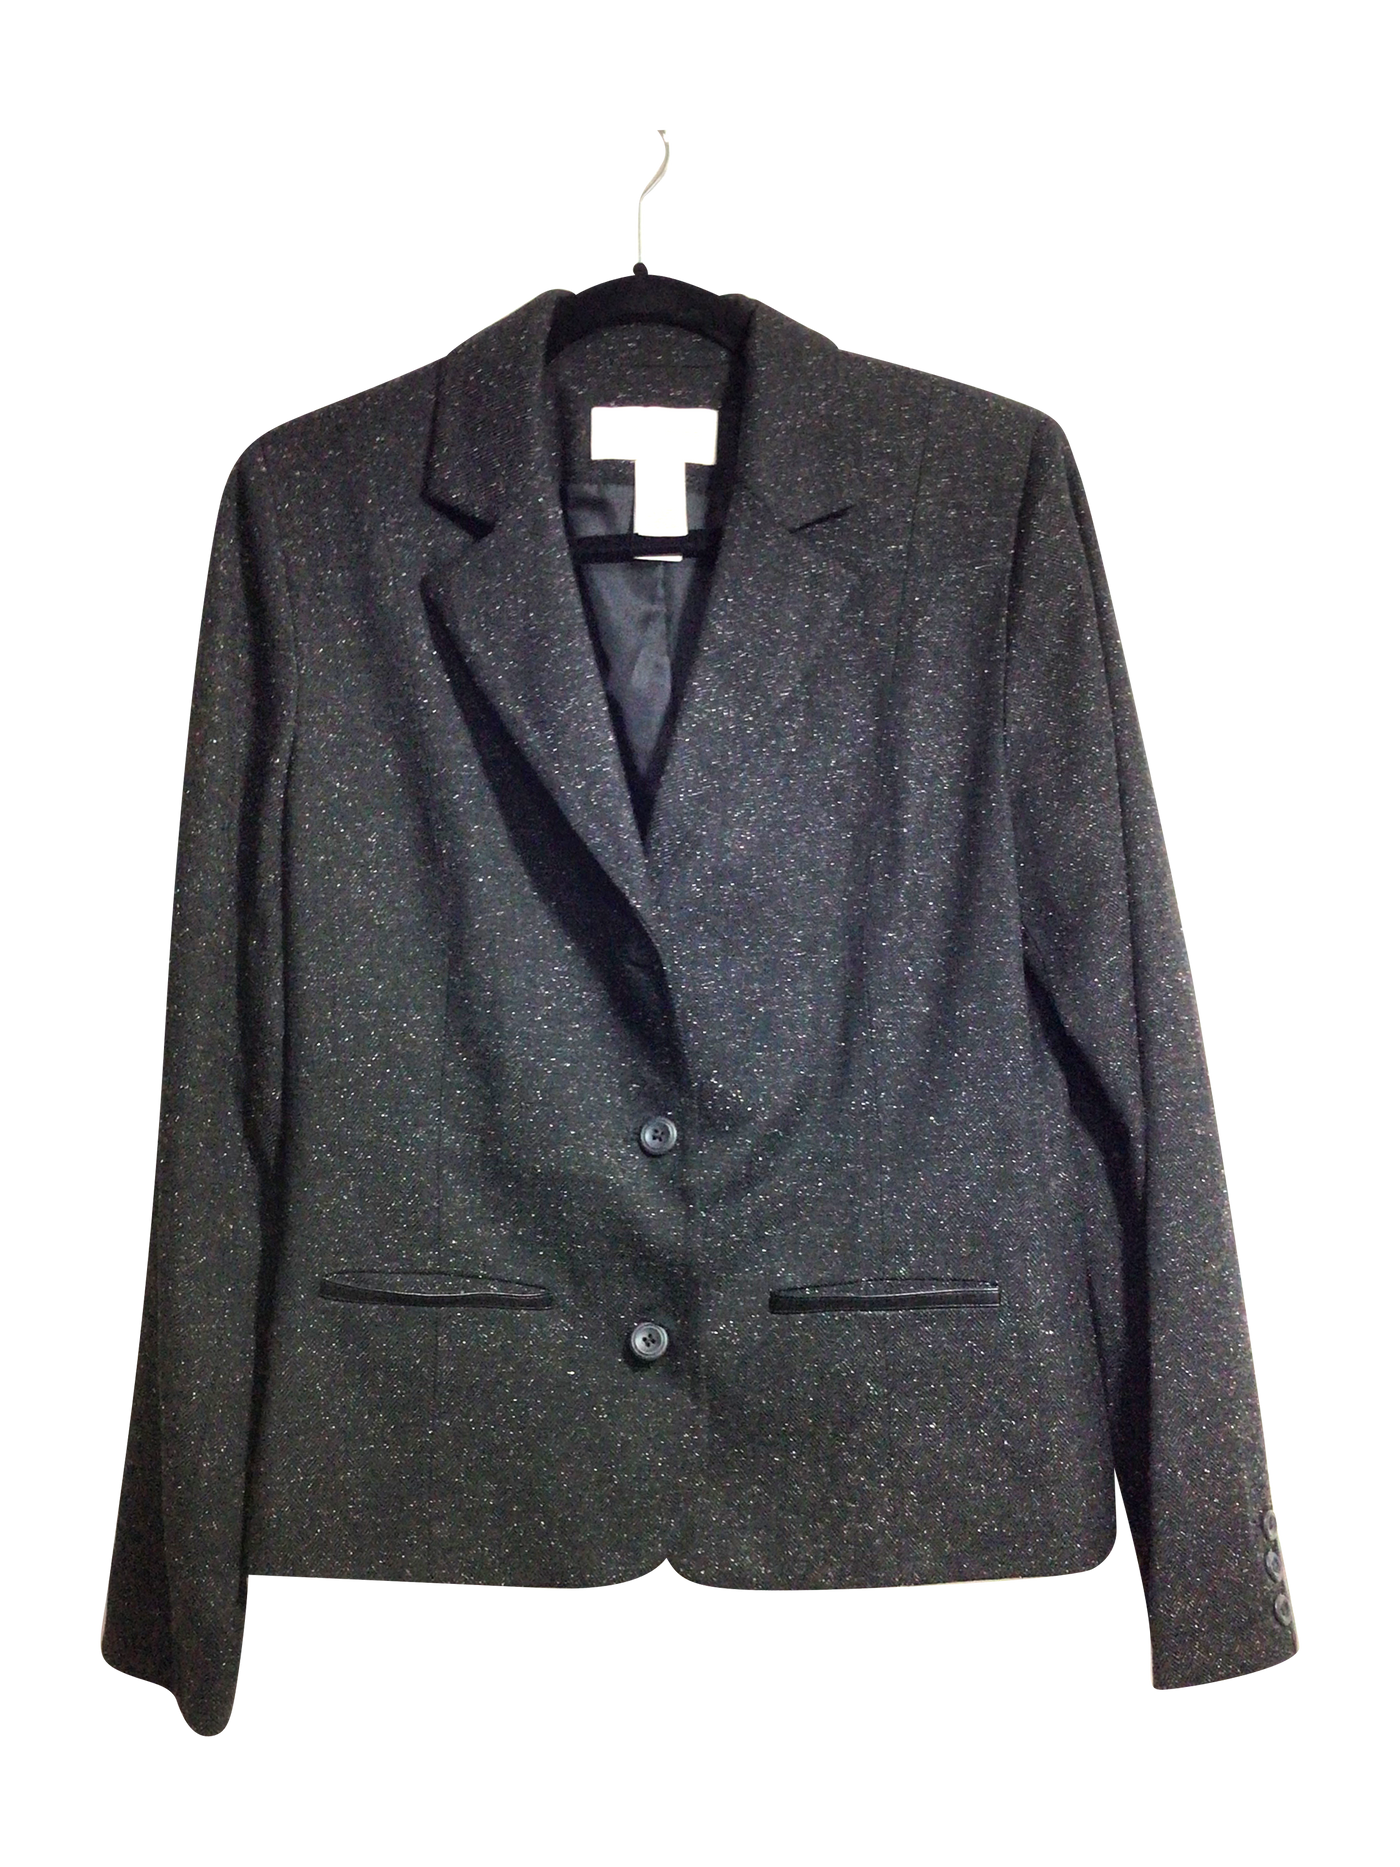 LIZ CLAIRBORNE Blazers Regular fit in Black - Size 10 | 10.39 $ KOOP